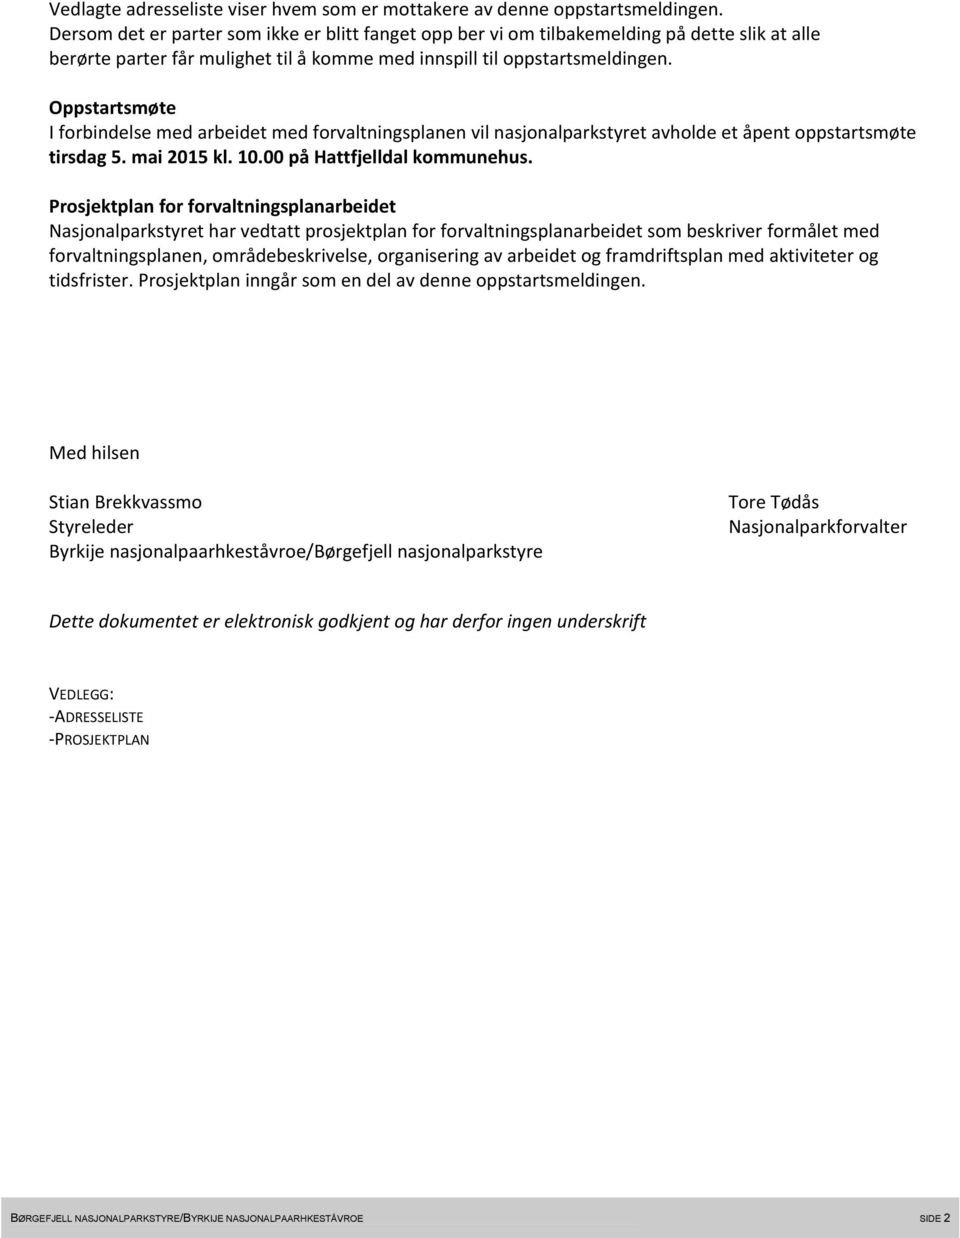 Oppstartsmøte I forbindelse med arbeidet med forvaltningsplanen vil nasjonalparkstyret avholde et åpent oppstartsmøte tirsdag 5. mai 2015 kl. 10.00 på Hattfjelldal kommunehus.